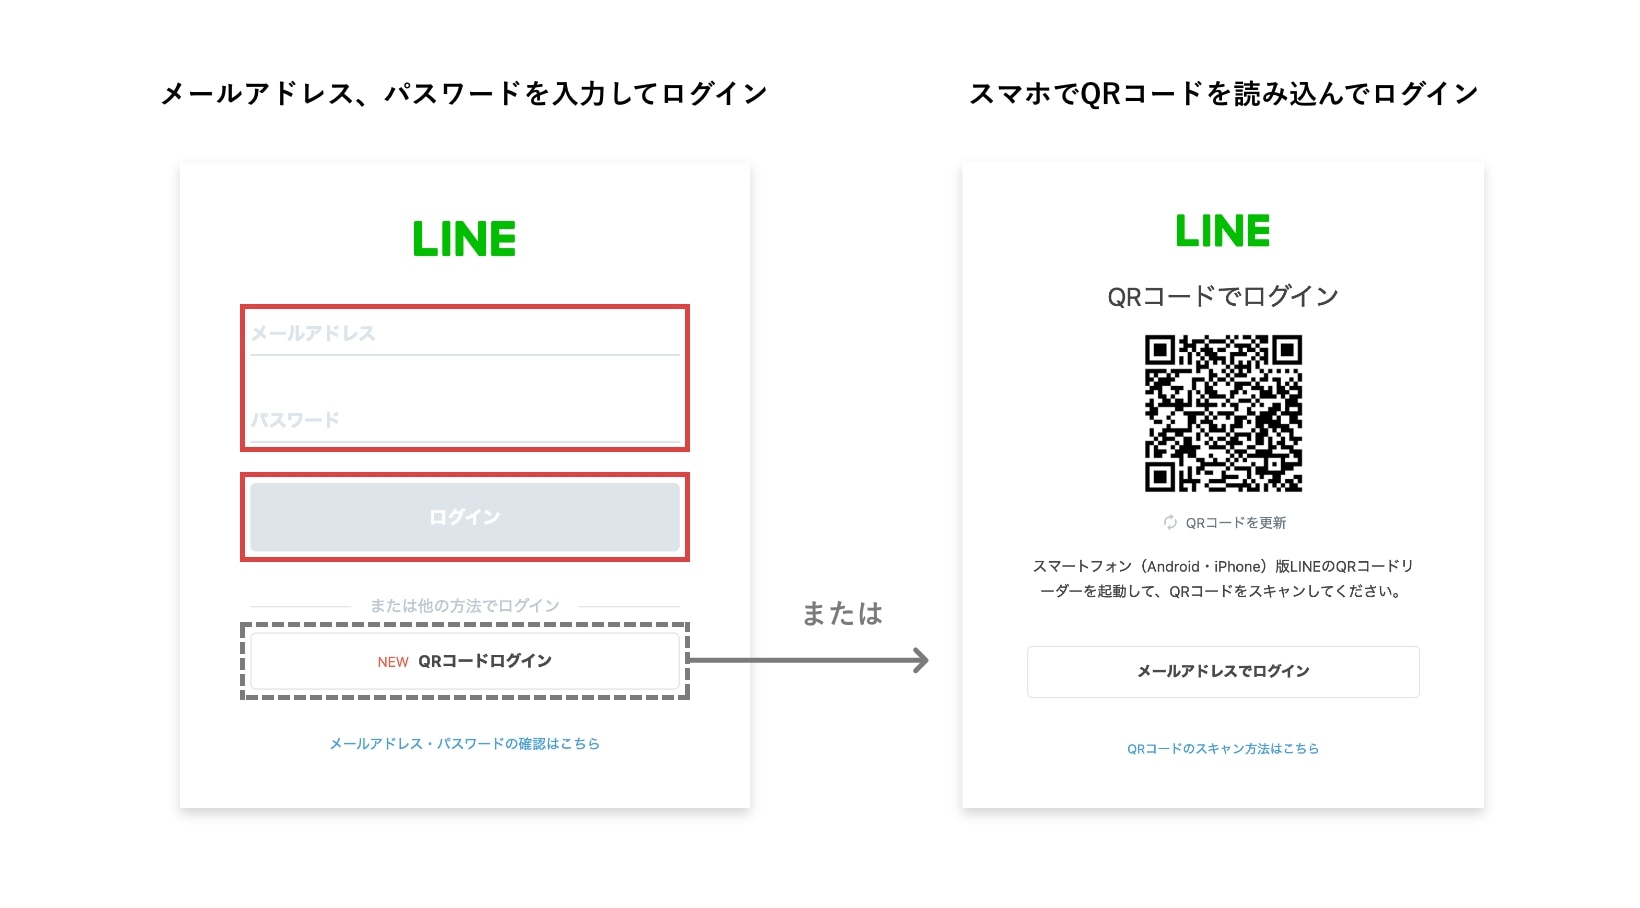 LINEアプリに遷移>LINEログイン画面にてログイン（LINEログイン済みの場合❸に移動）